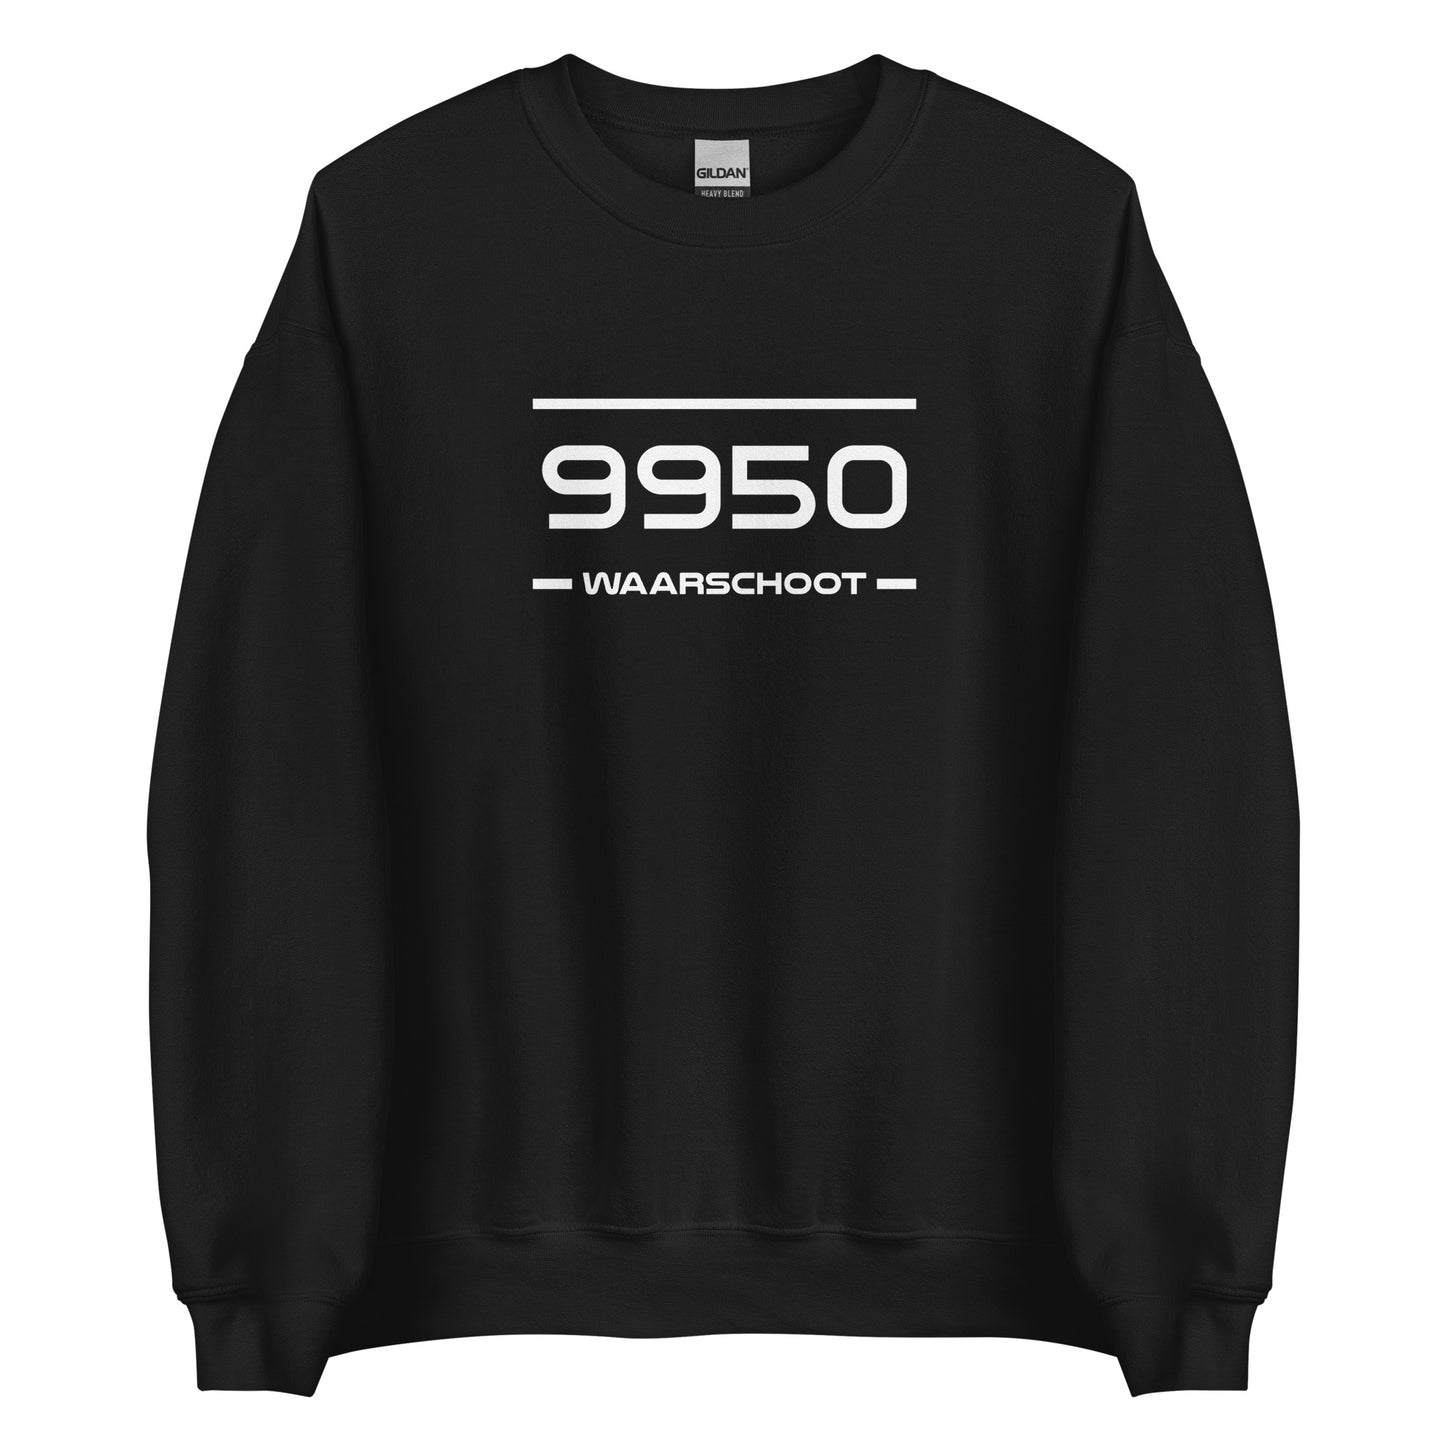 Sweater - 9950 - Waarschoot (M/V)